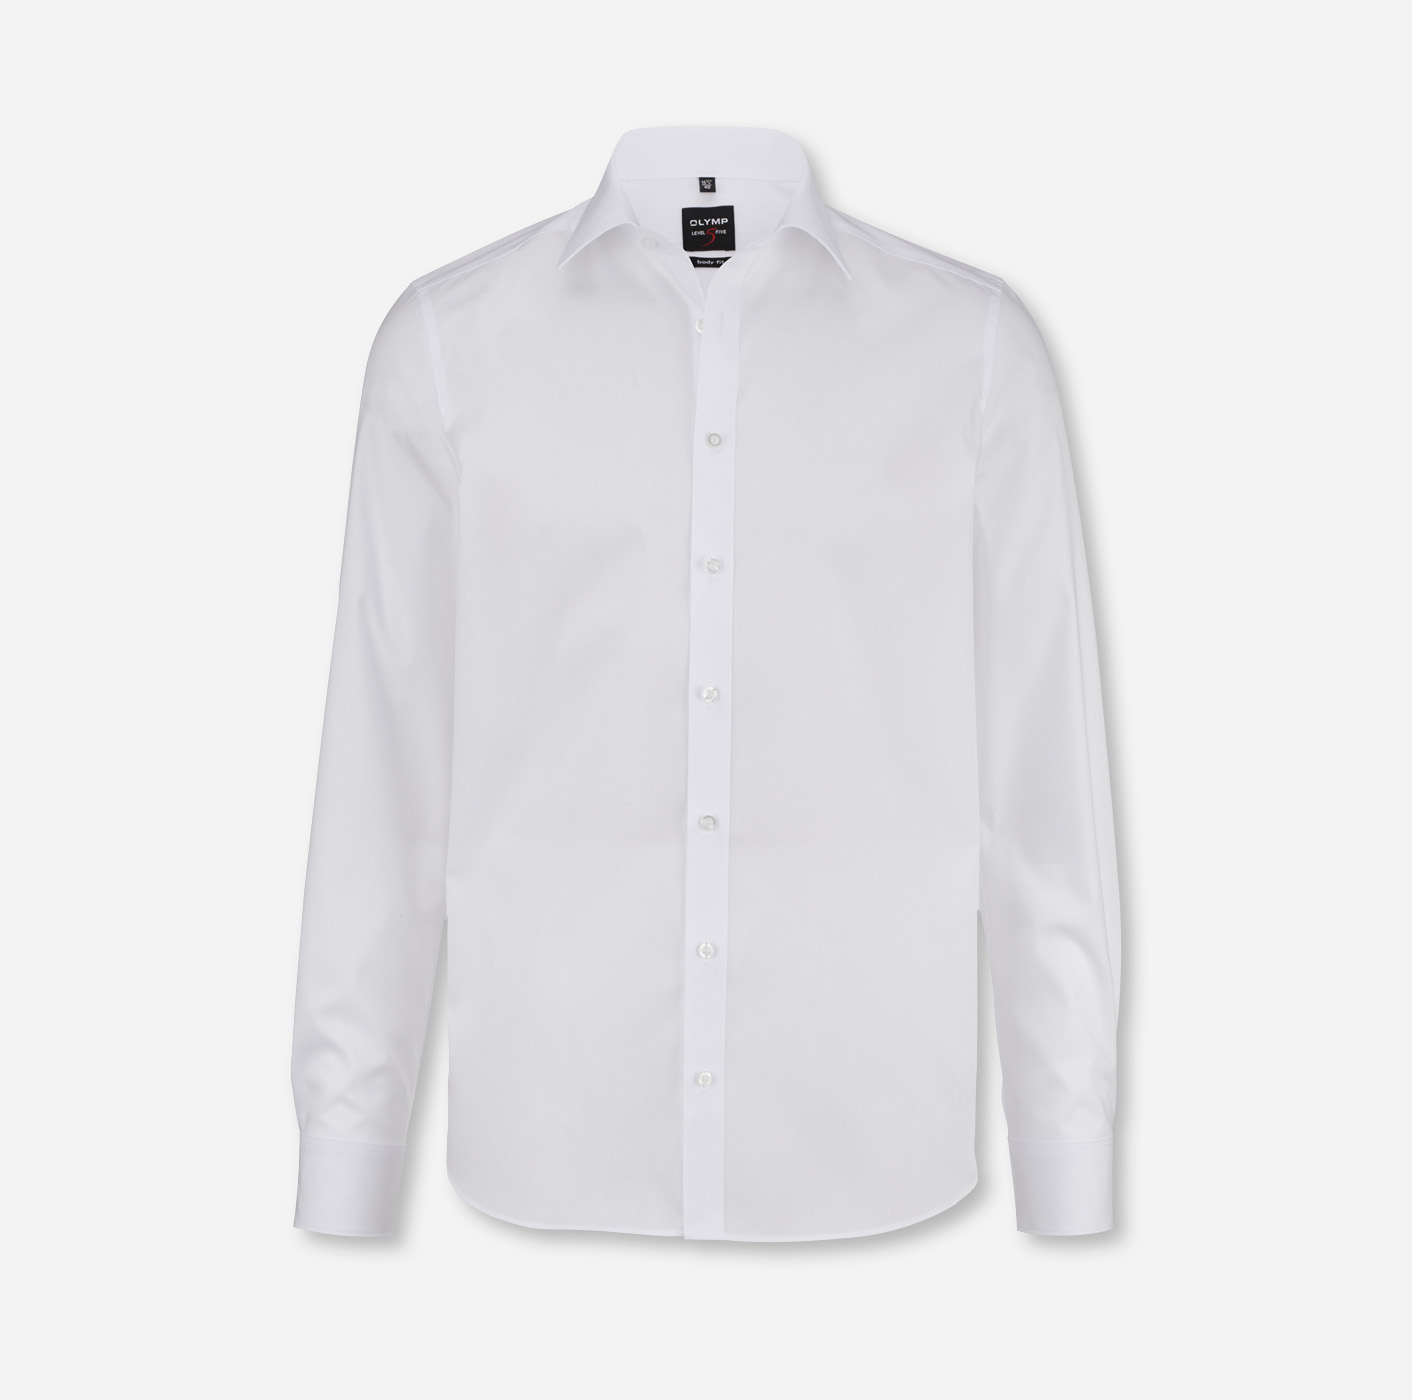 Langarm-Hemd OLYMP Level Five body mit Logo besticken weiß fit